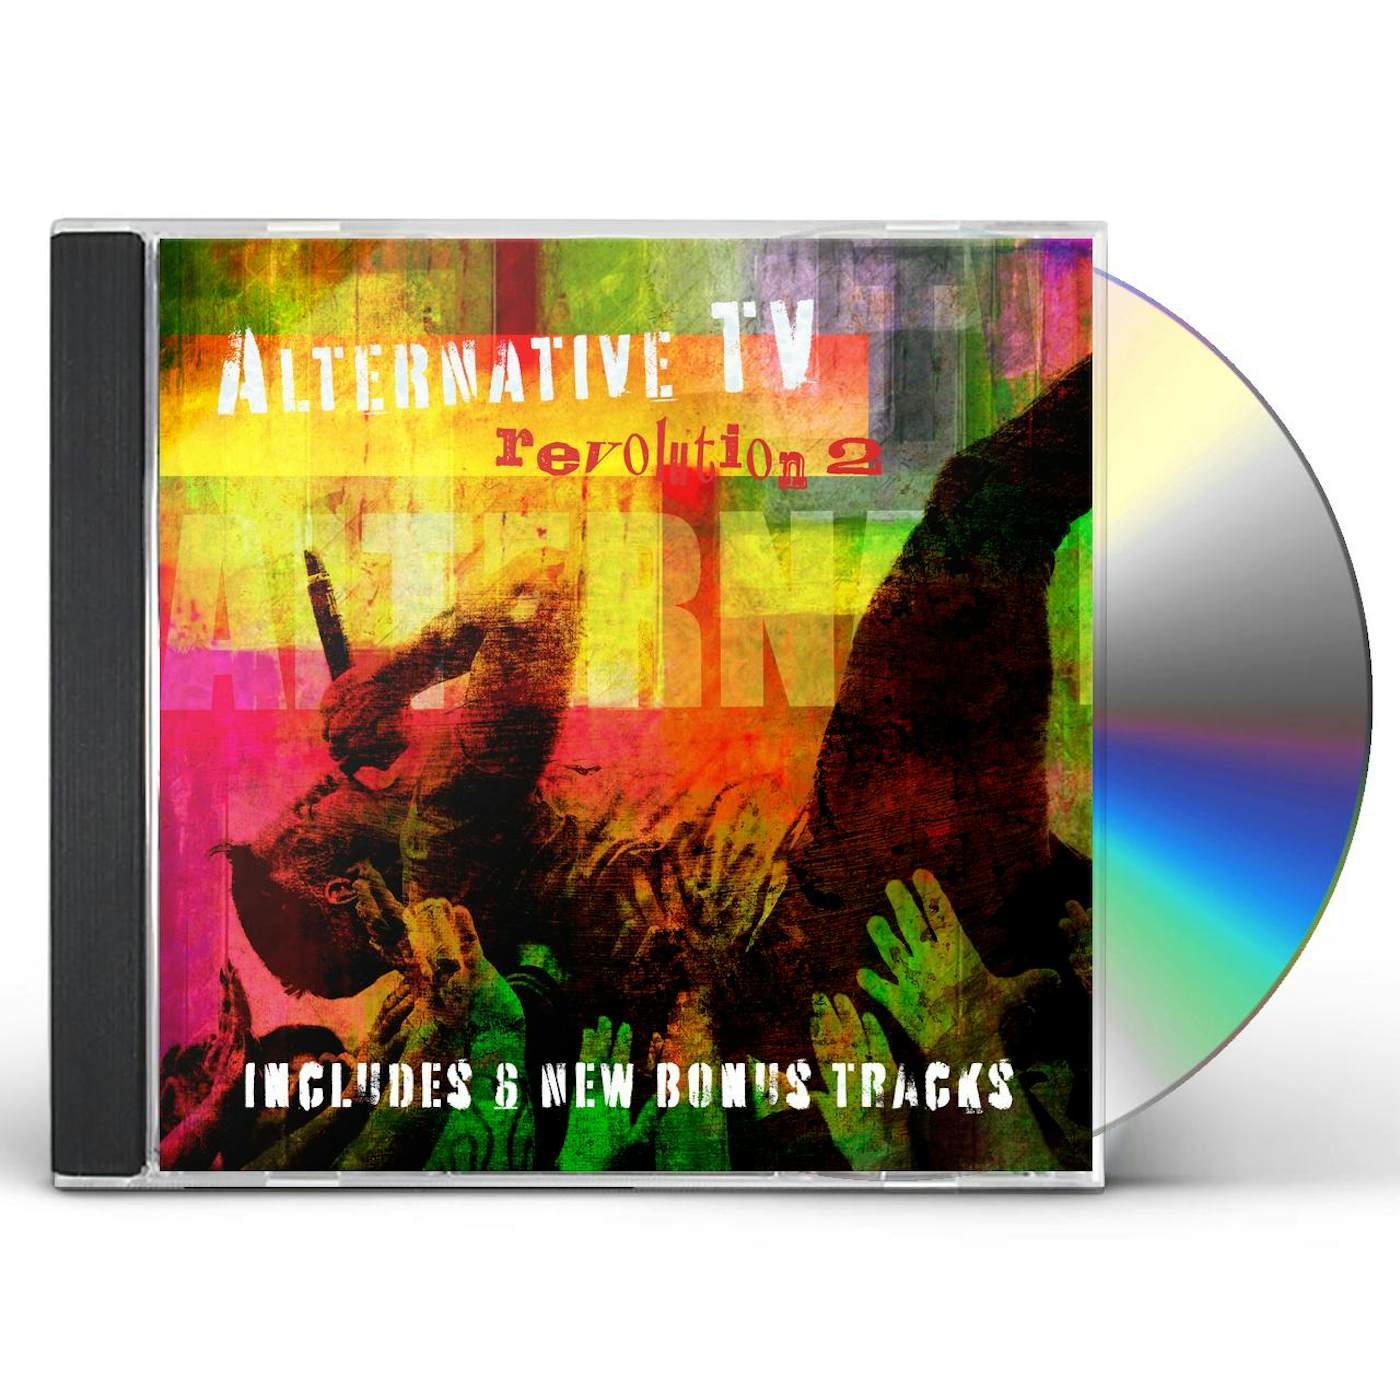 Alternative TV Revolution2 CD